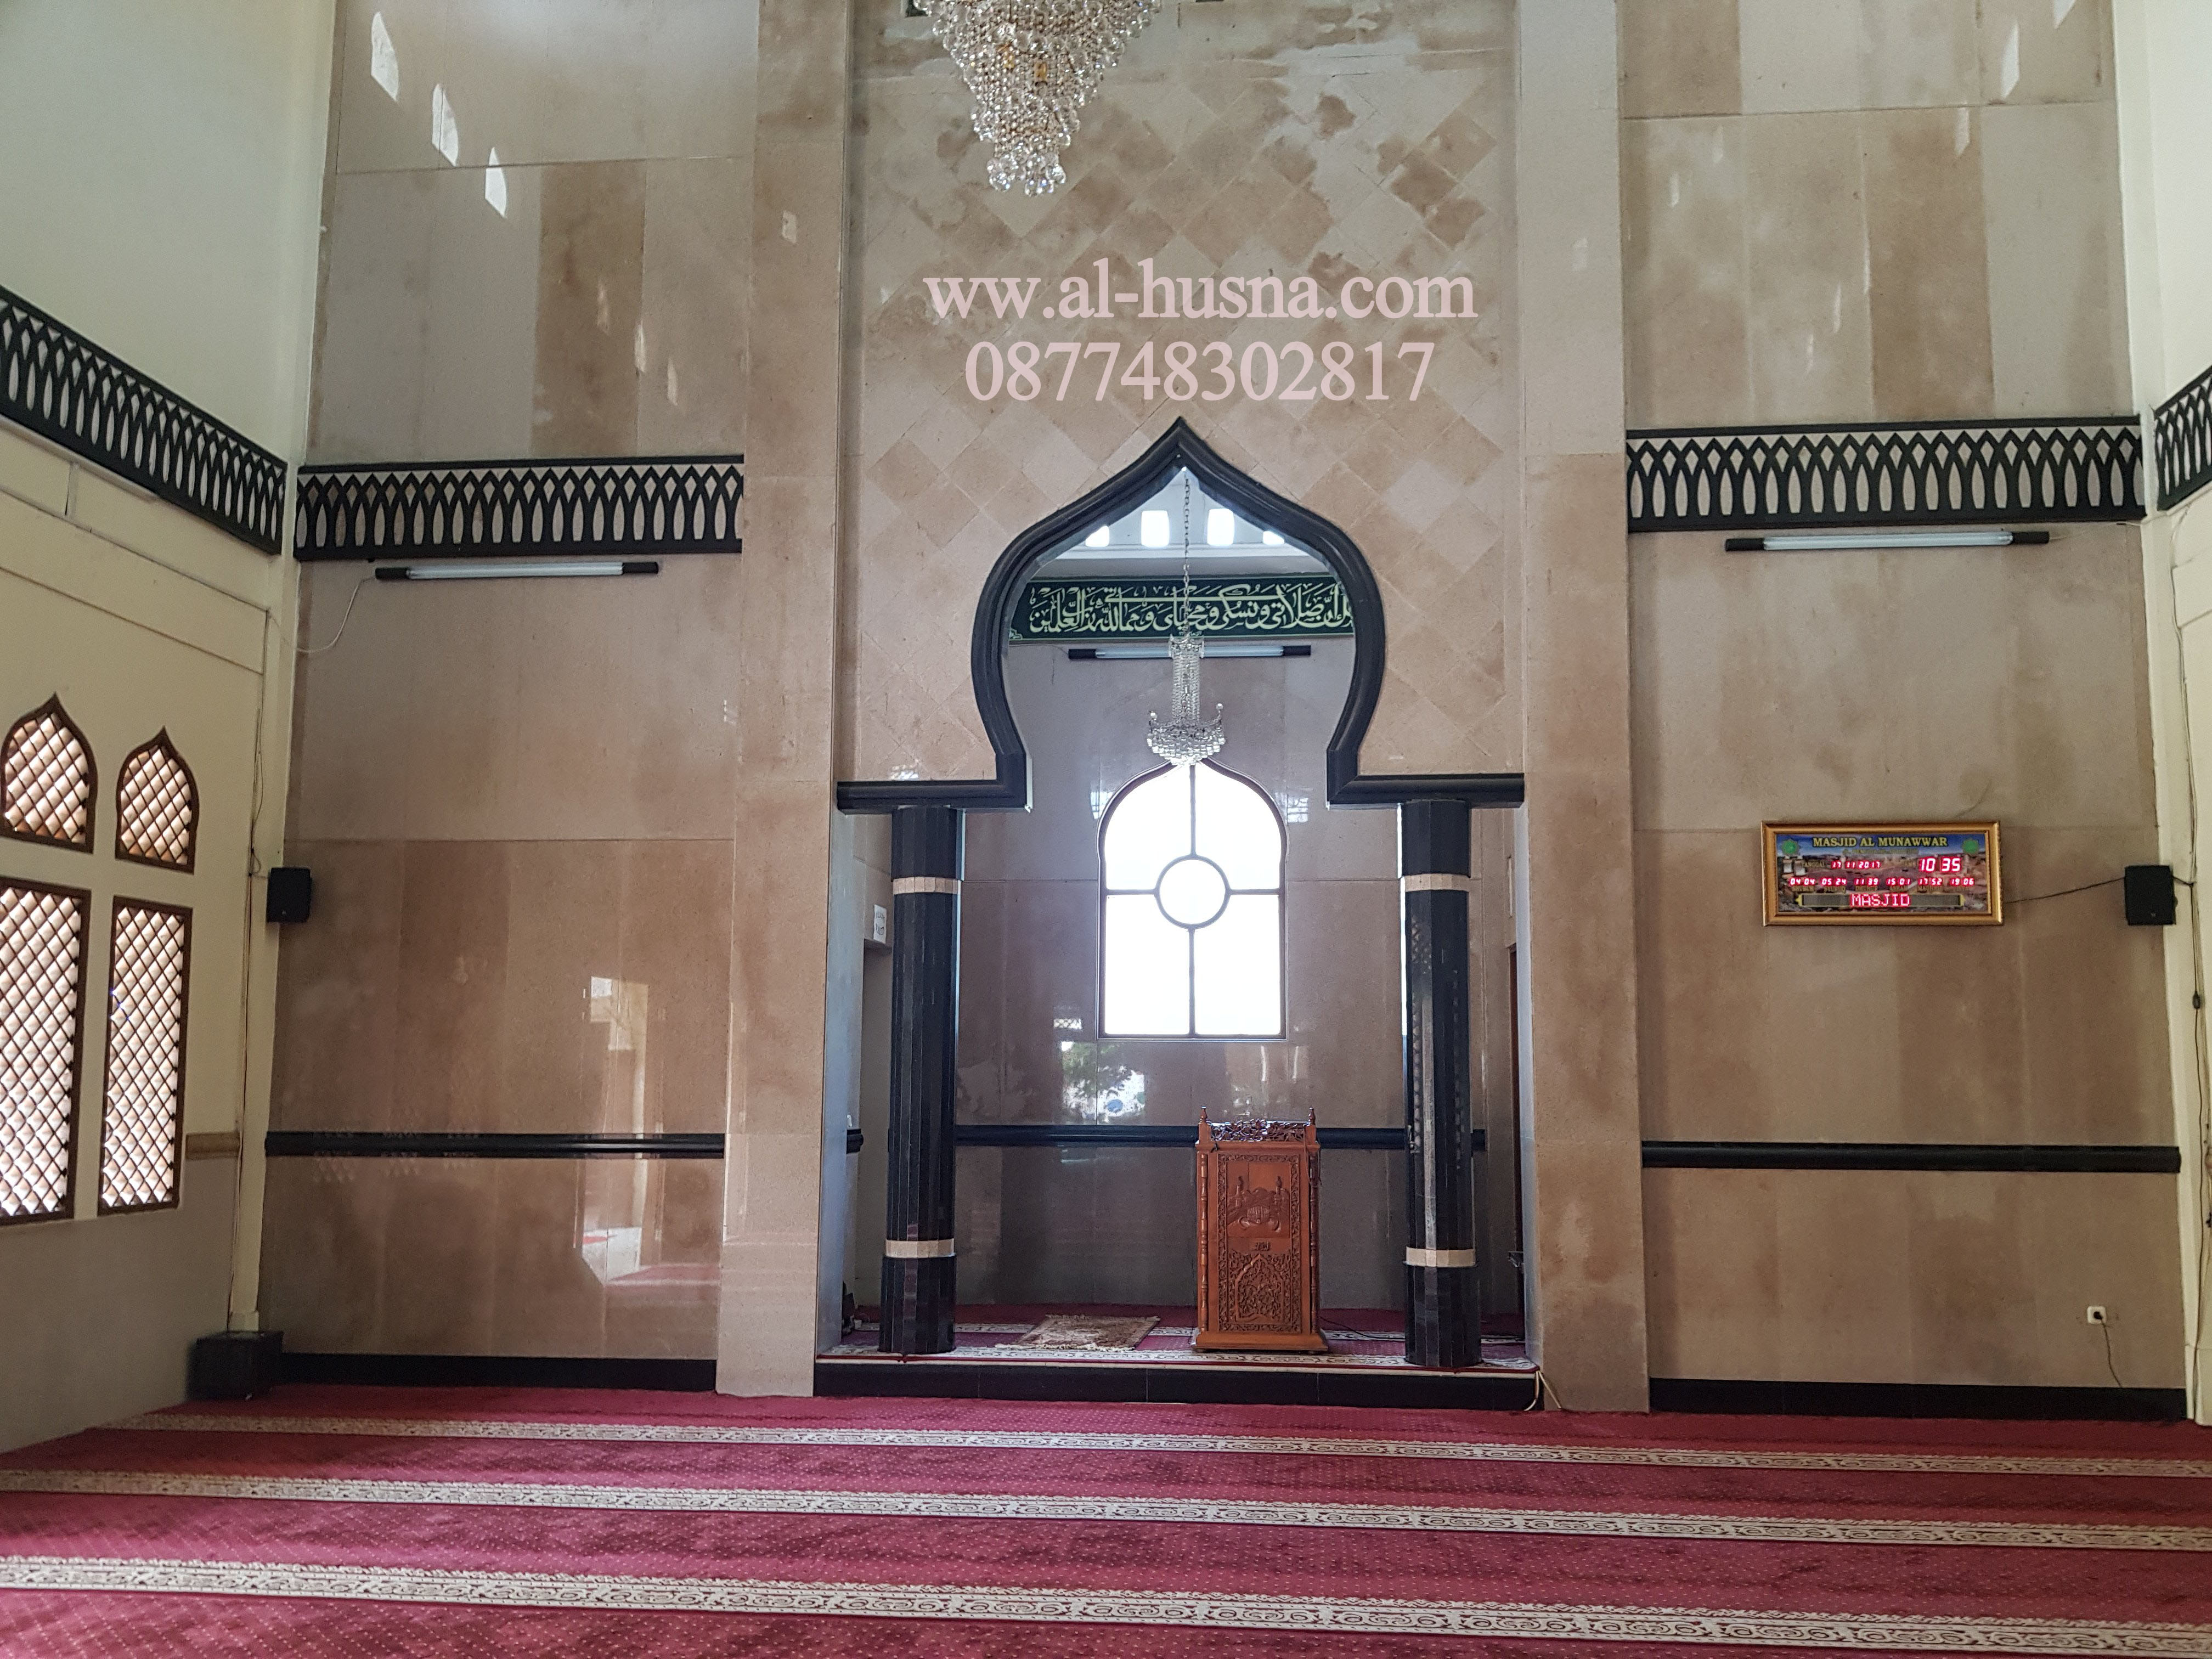 Jual Karpet Masjid Roll di Gambir Jakarta